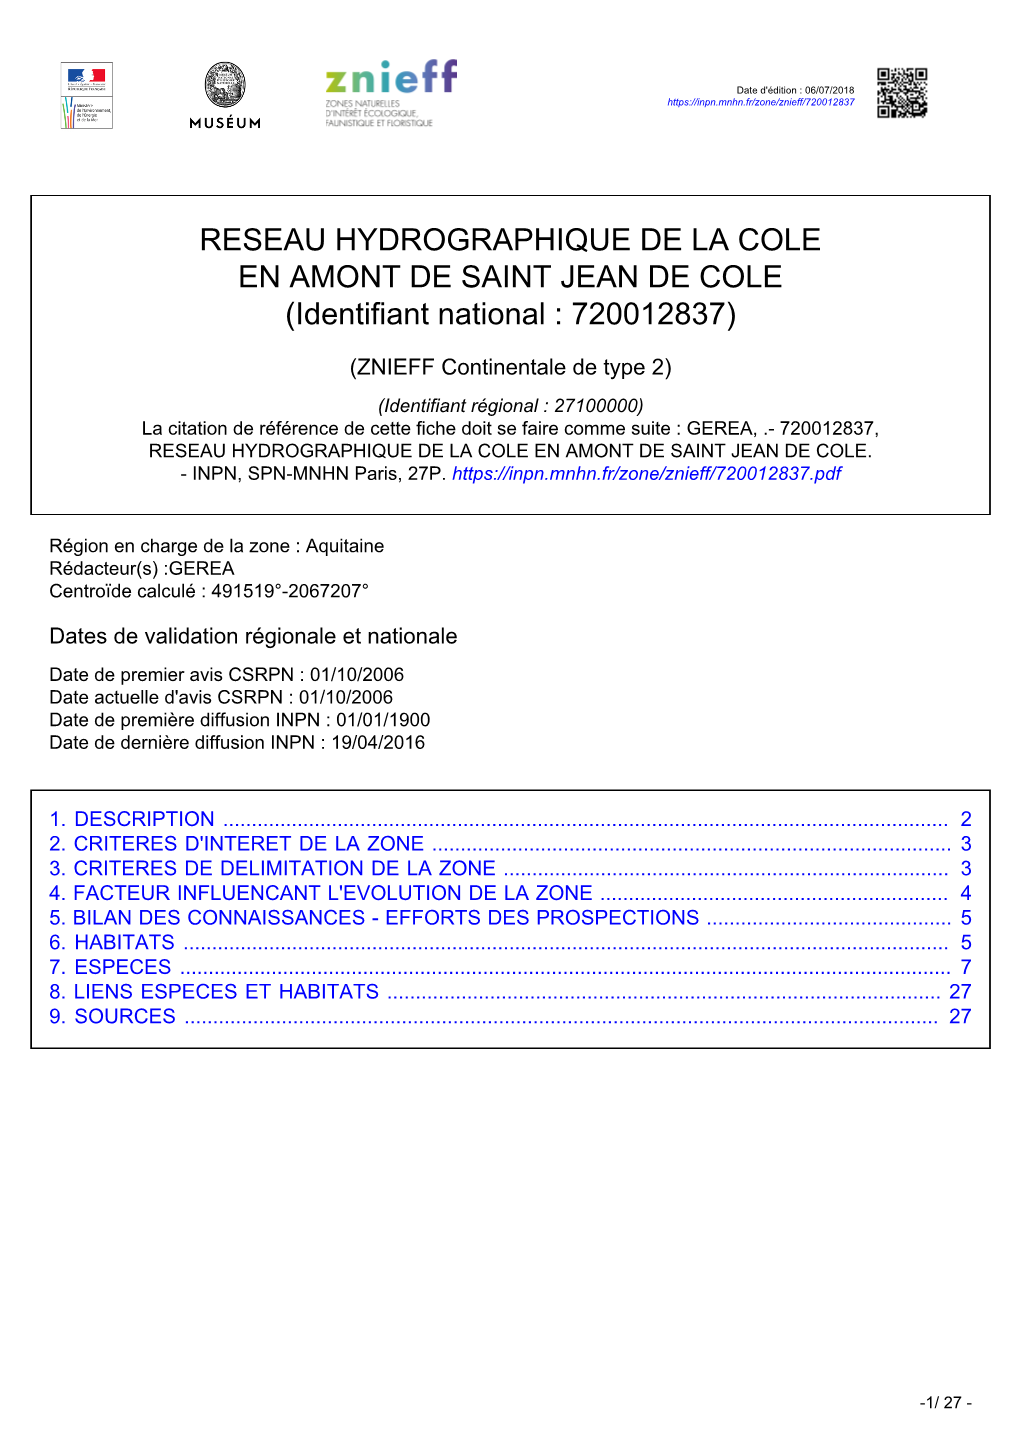 RESEAU HYDROGRAPHIQUE DE LA COLE EN AMONT DE SAINT JEAN DE COLE (Identifiant National : 720012837)